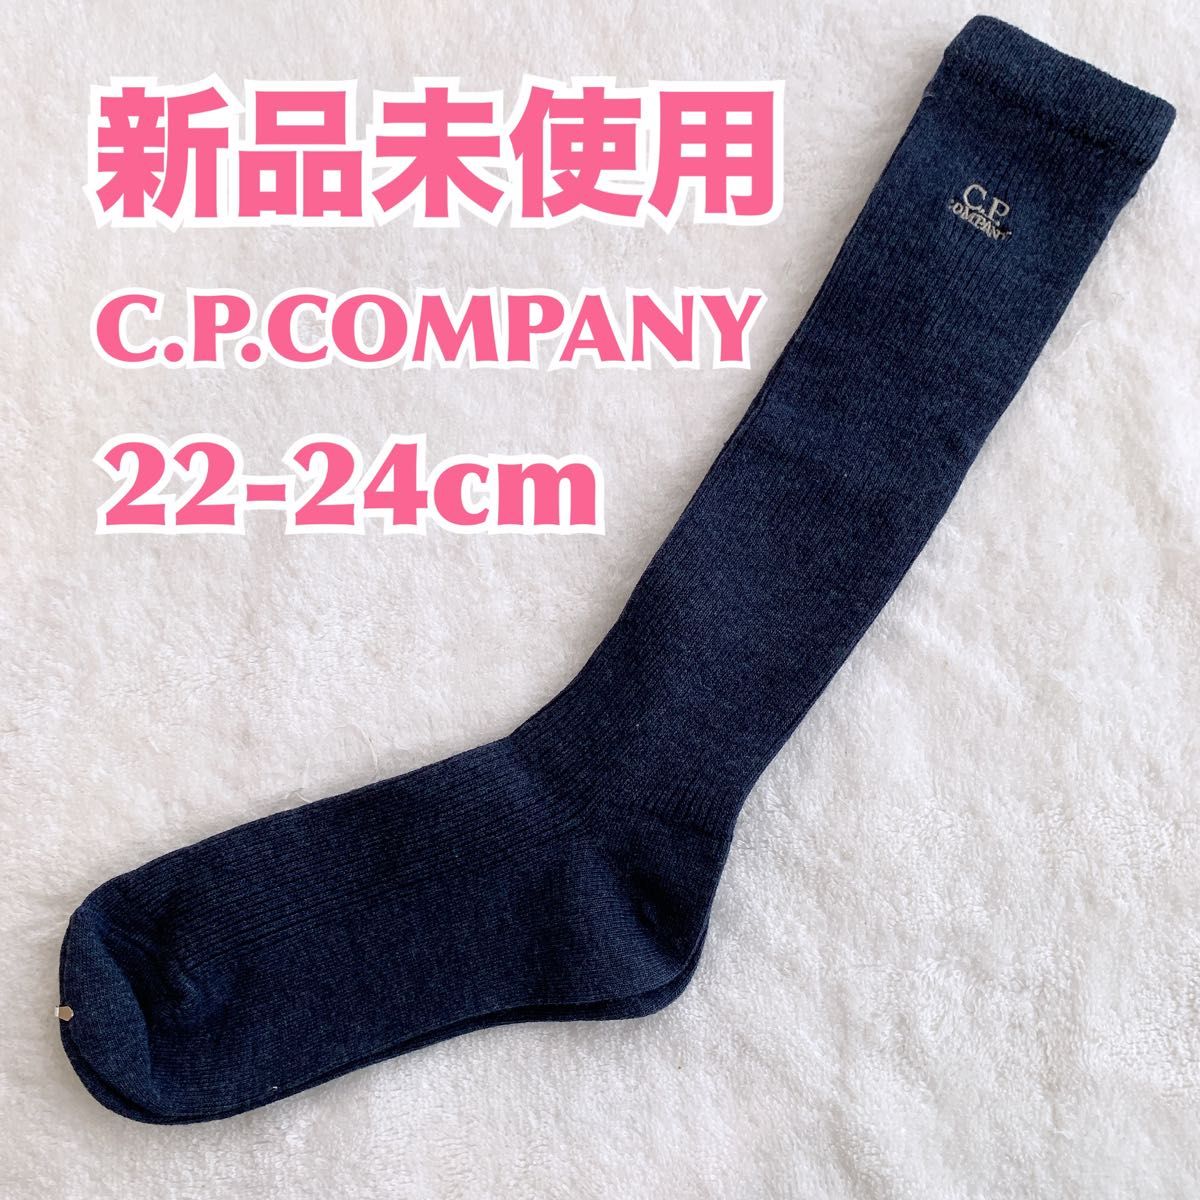 【新品】C.P.COMPANY シーピーカンパニー フォーマルハイソックス